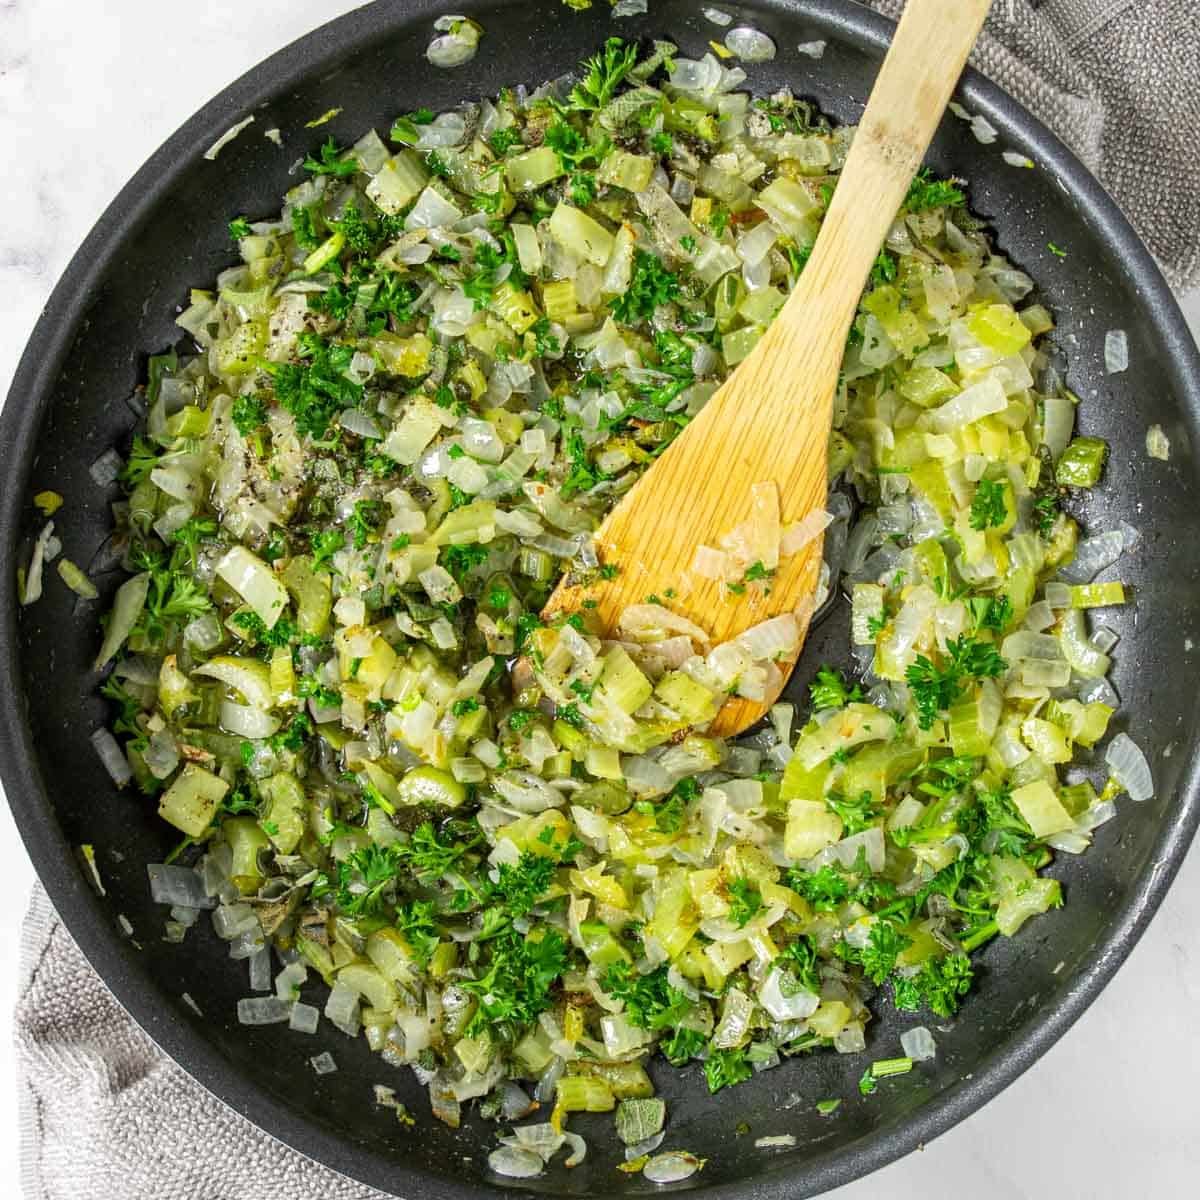 celery, onions, sage, parsley and seasonings in a skillet